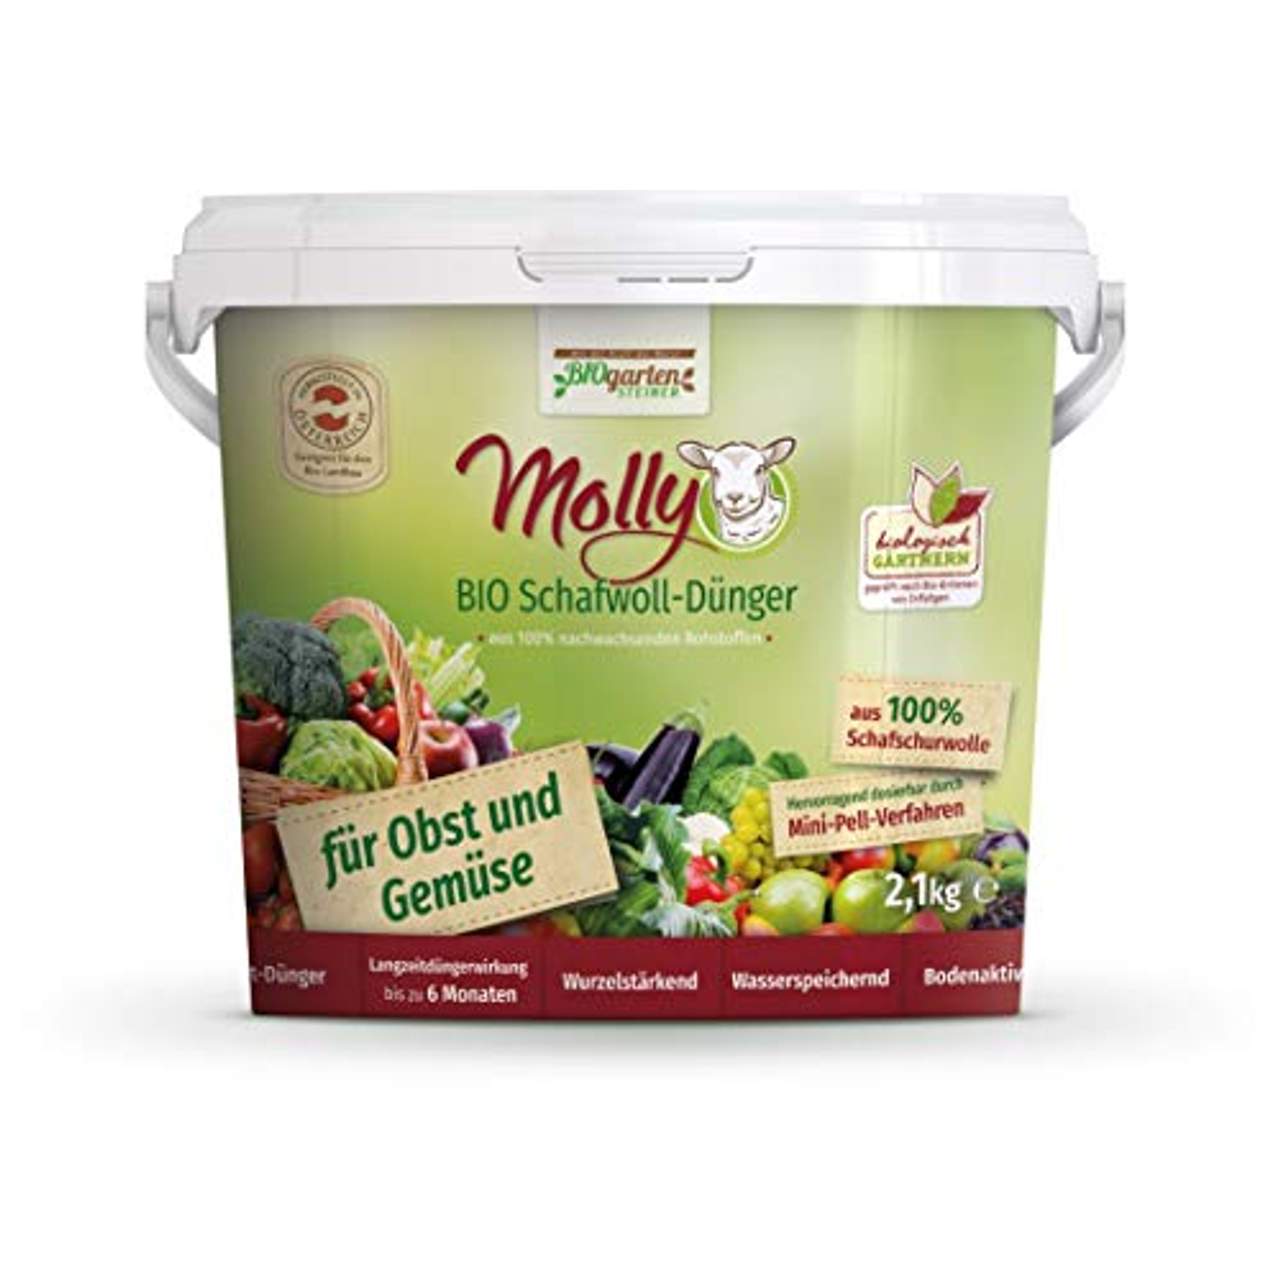 Molly Bio Schafwolldünger für Obst- und Gemüse 2,1kg